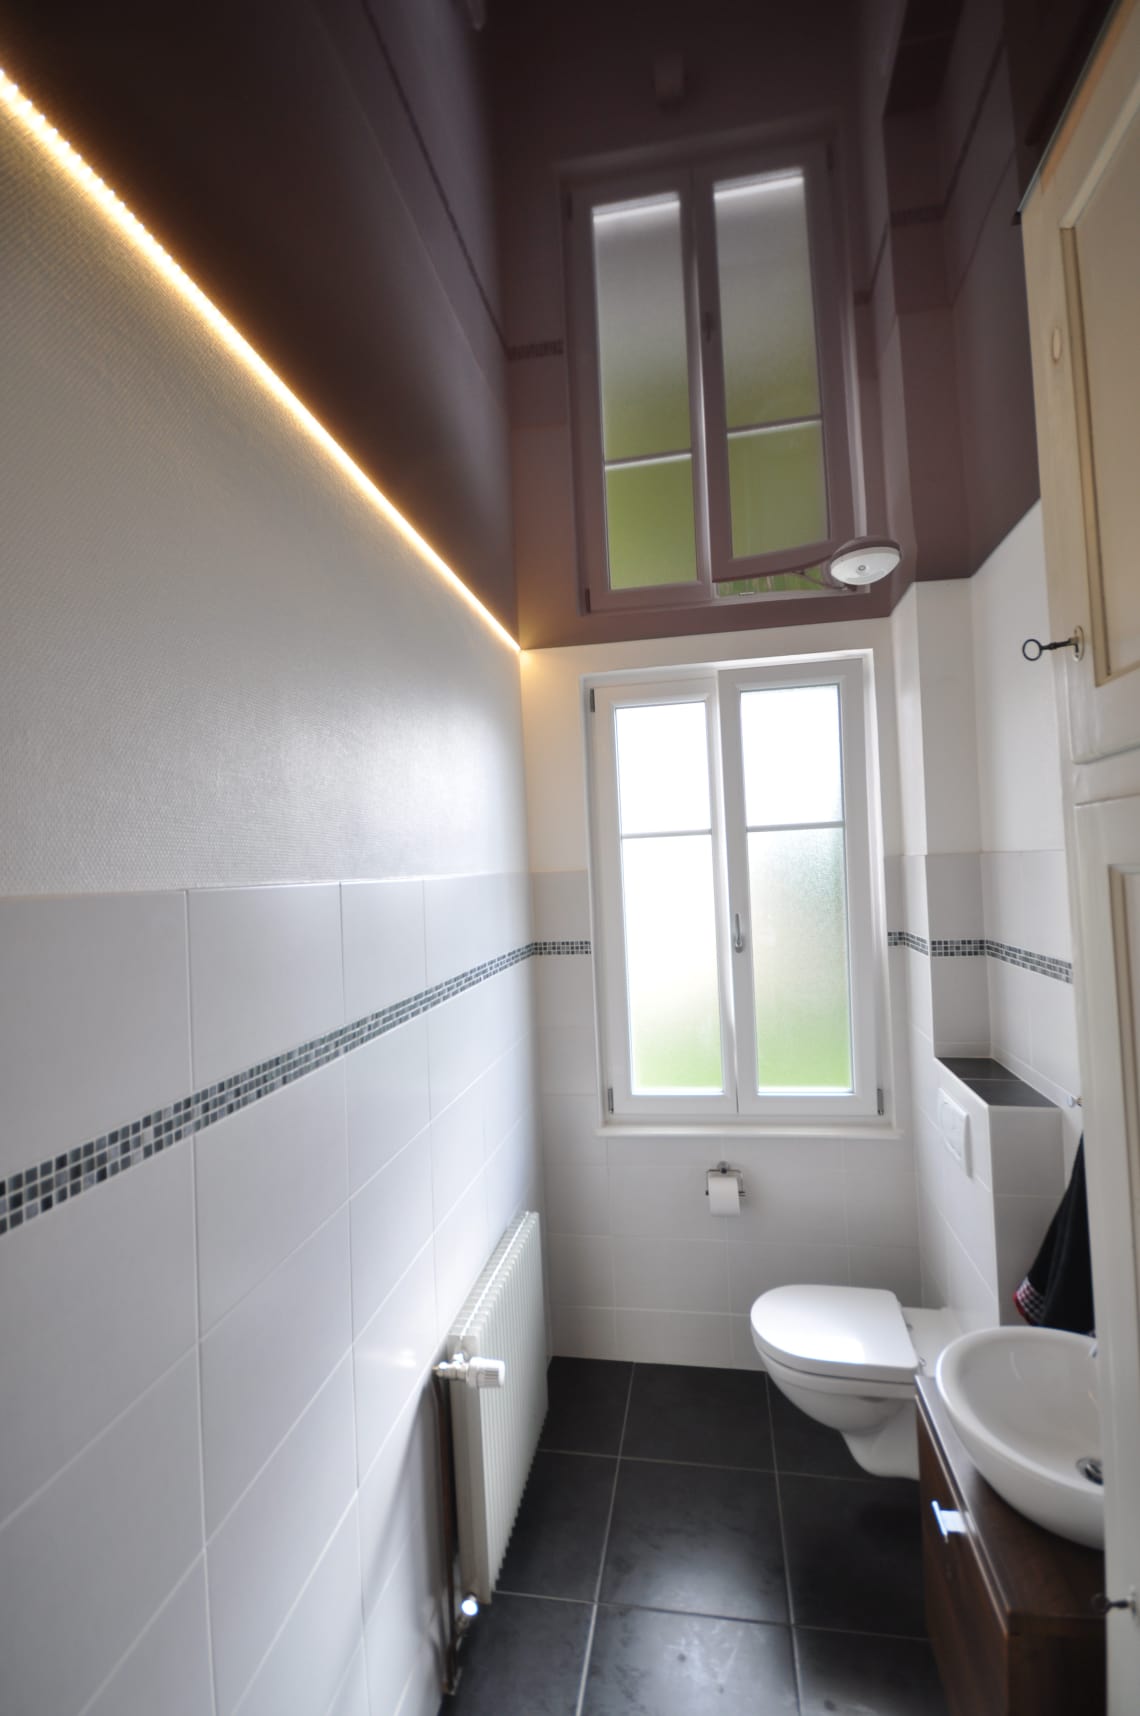 Lackspanndecke im WC in bordeaux Hochglanz mit LED Lichtkanal in der Schattenfuge